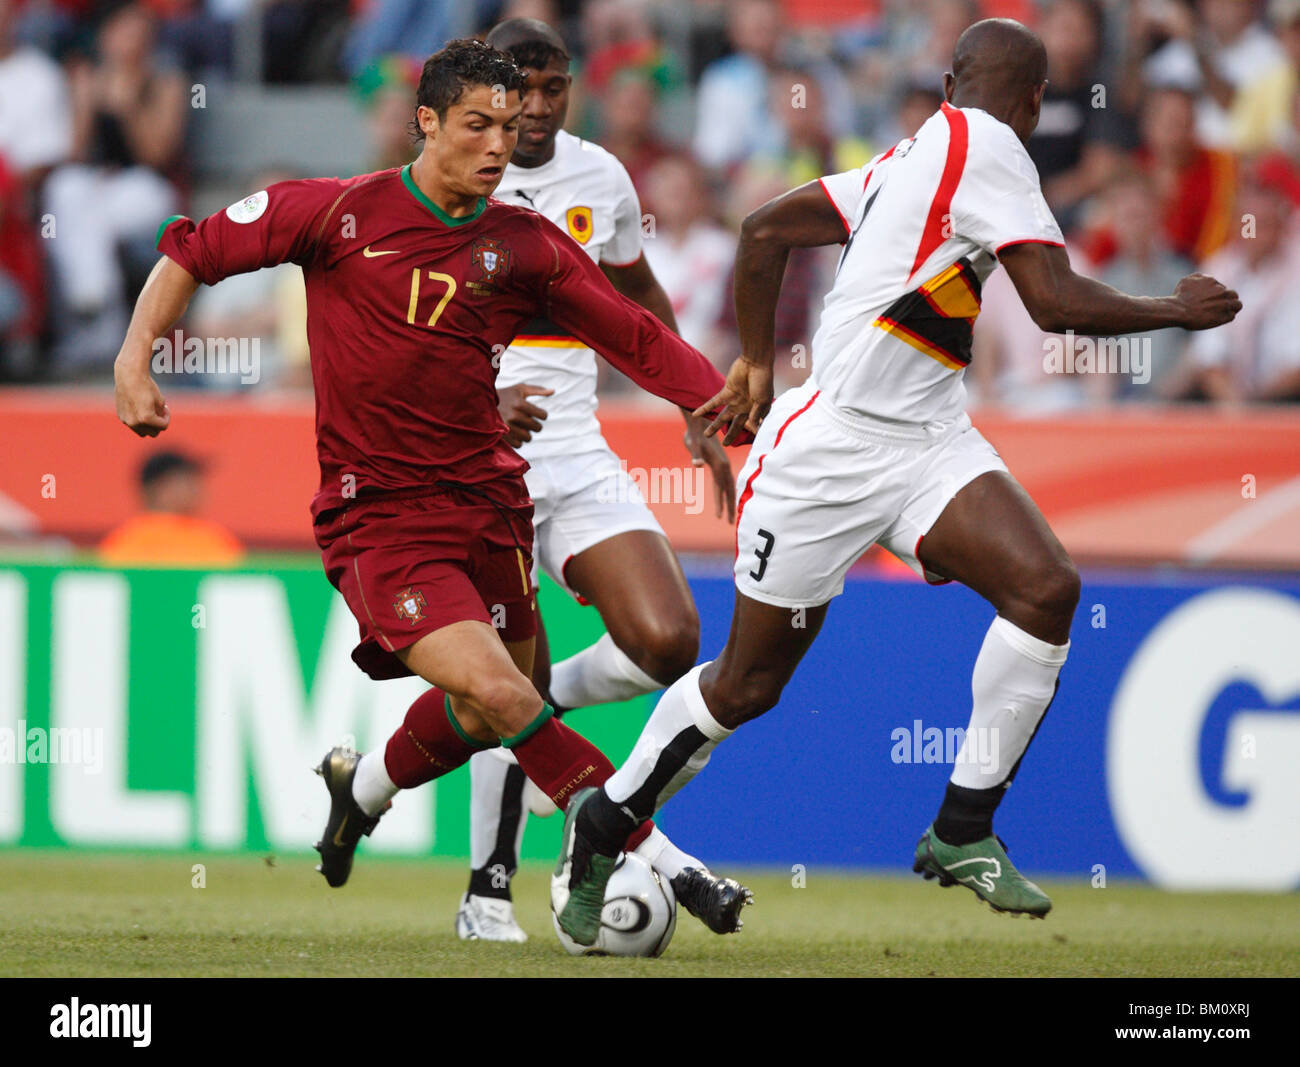 Cristiano Ronaldo du Portugal durs la balle lors d'un match de football de la Coupe du Monde de la FIFA contre l'Angola le 11 juin 2006. Banque D'Images